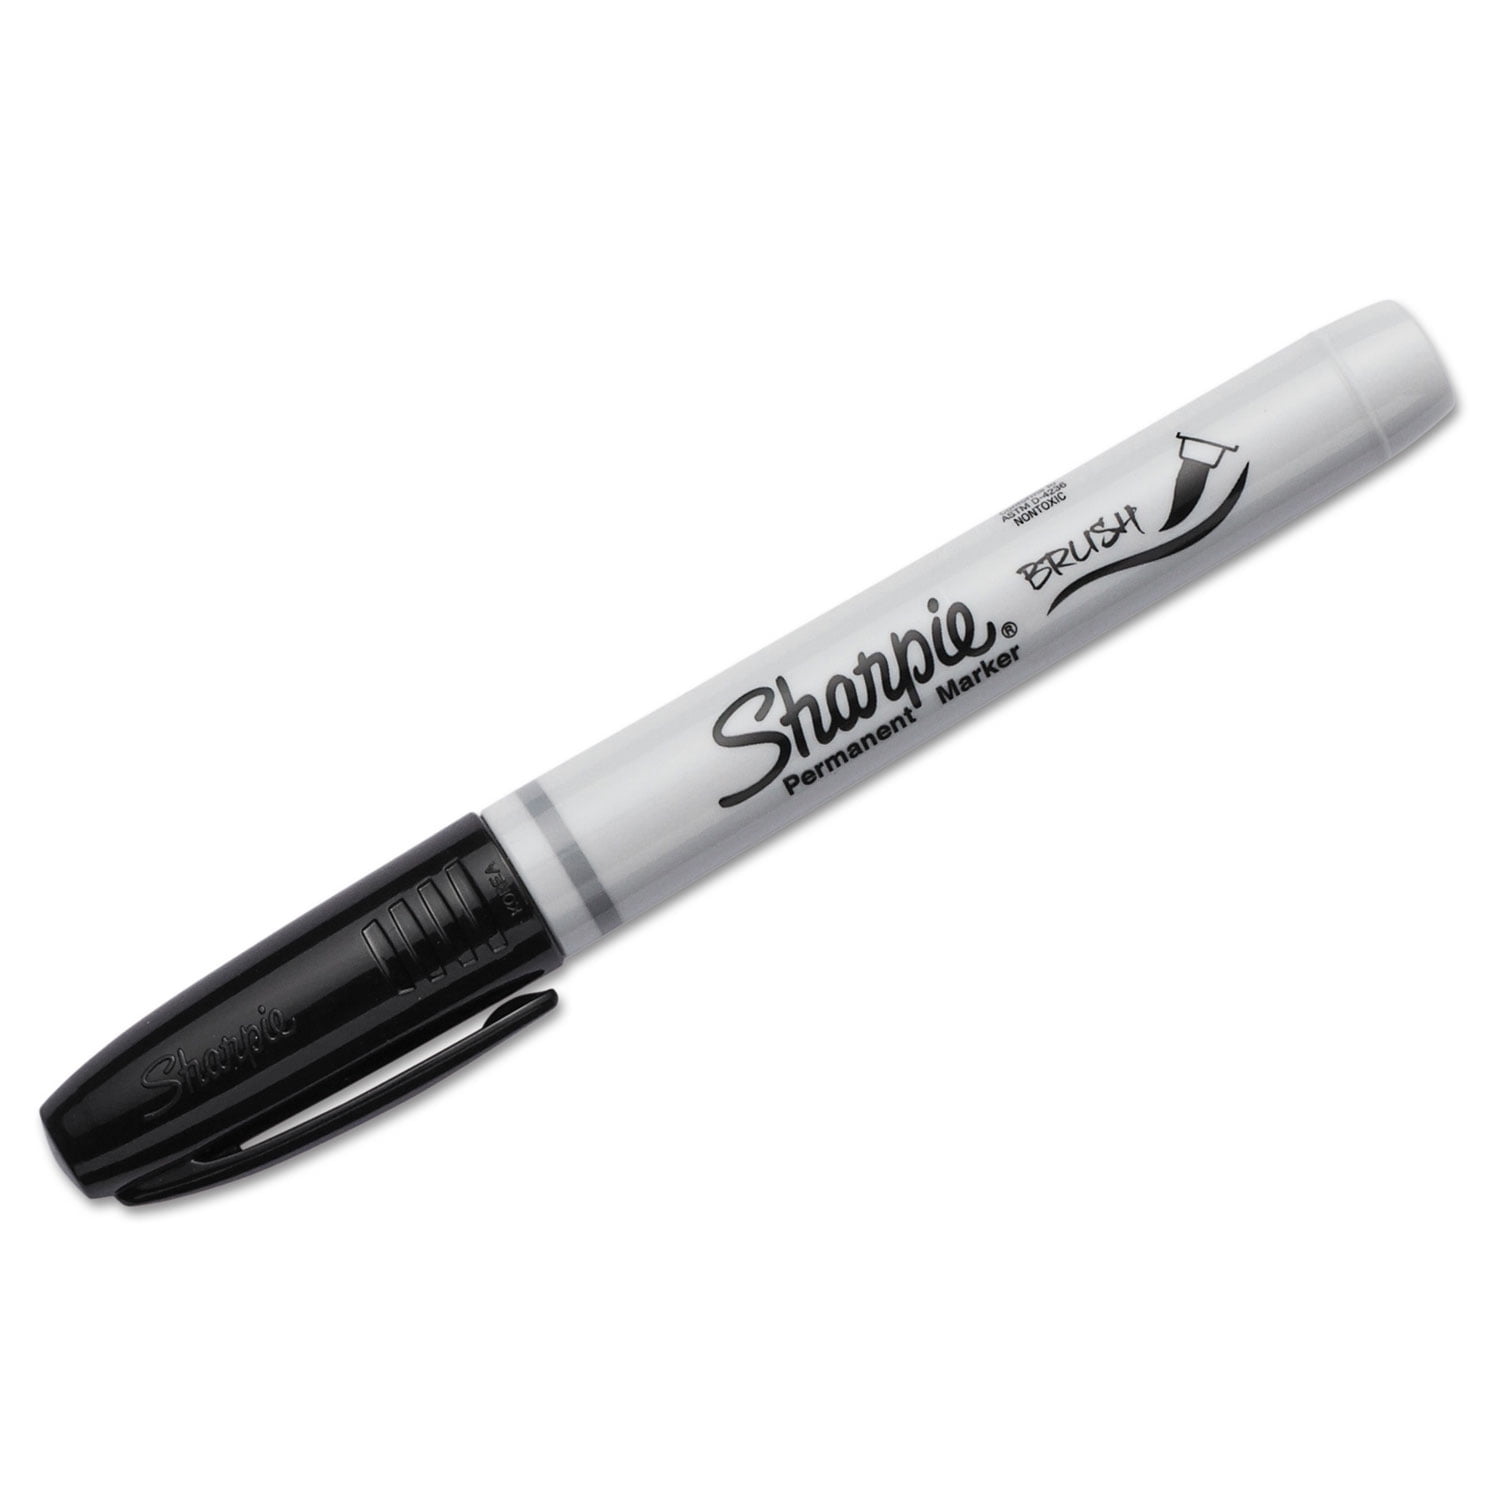 Sharpie® Brush Tip Permanent Markers, 4 pk - Kroger